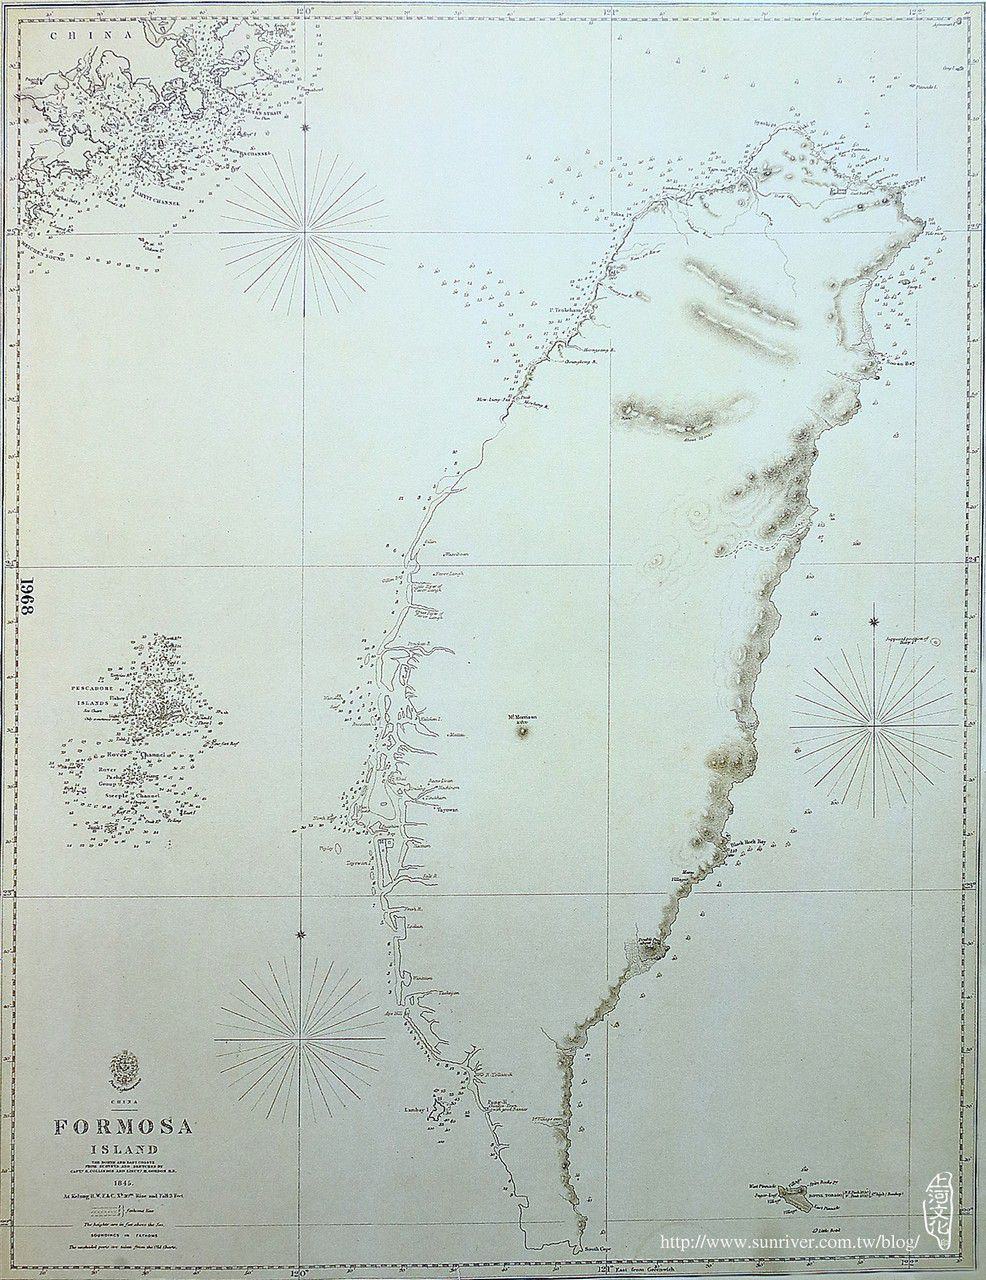 1845年福爾摩沙島圖(最早出現的英文山名)